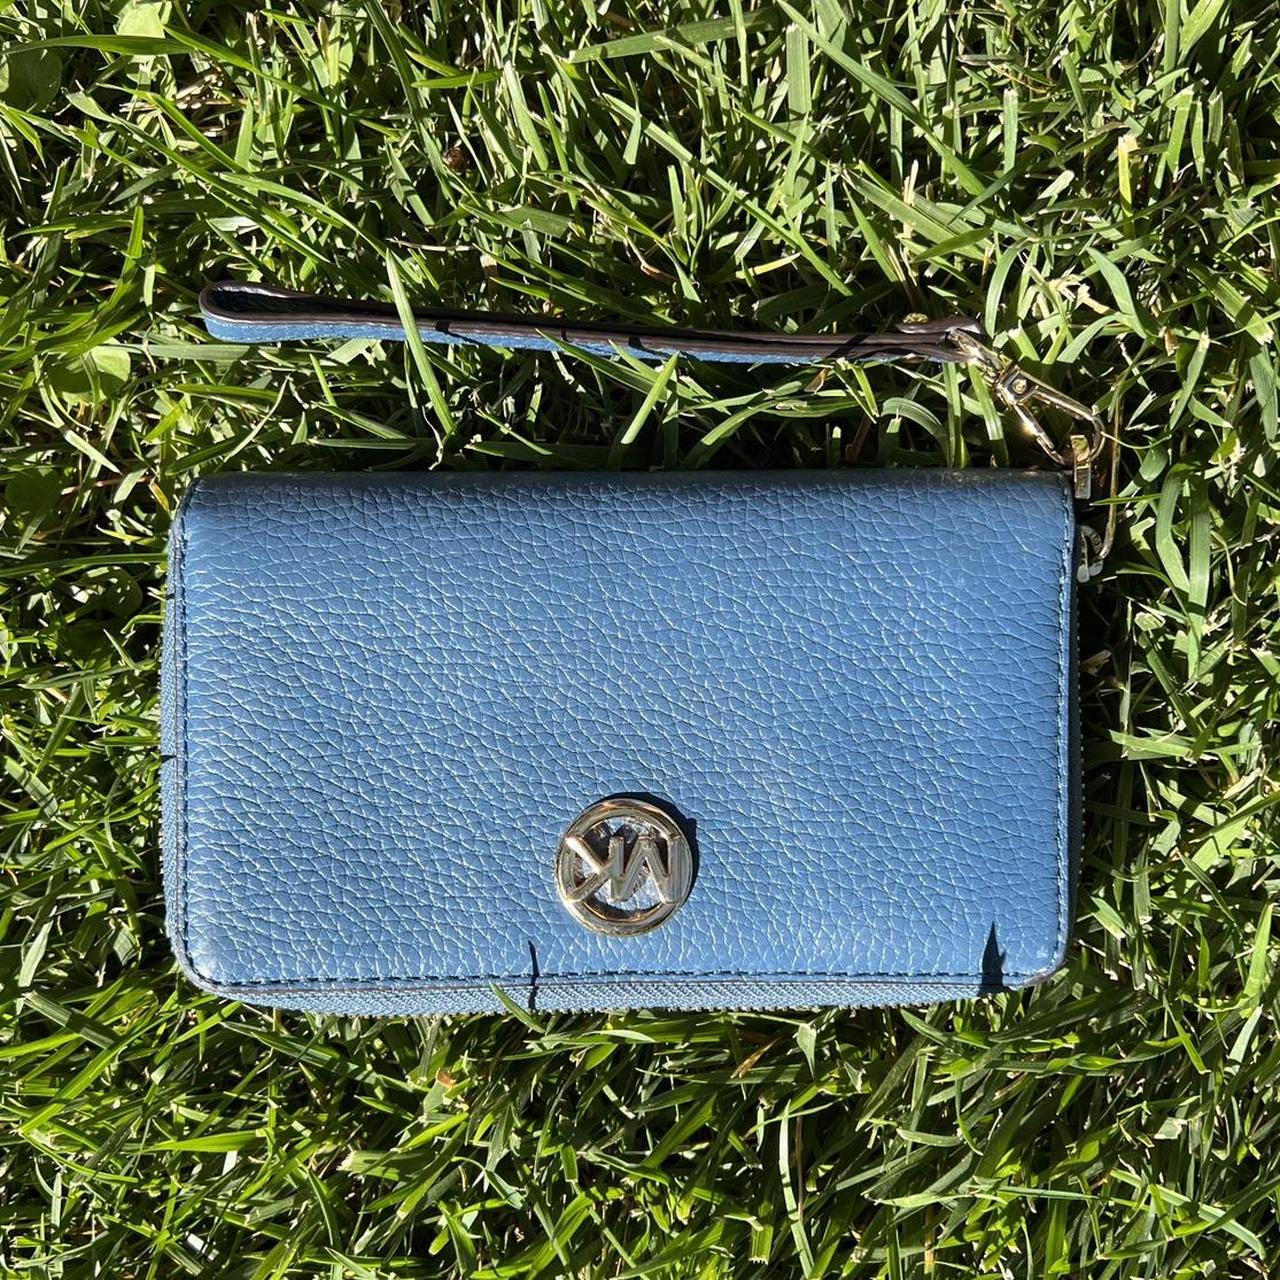 Wallet Michael Kors Woman Color Blue